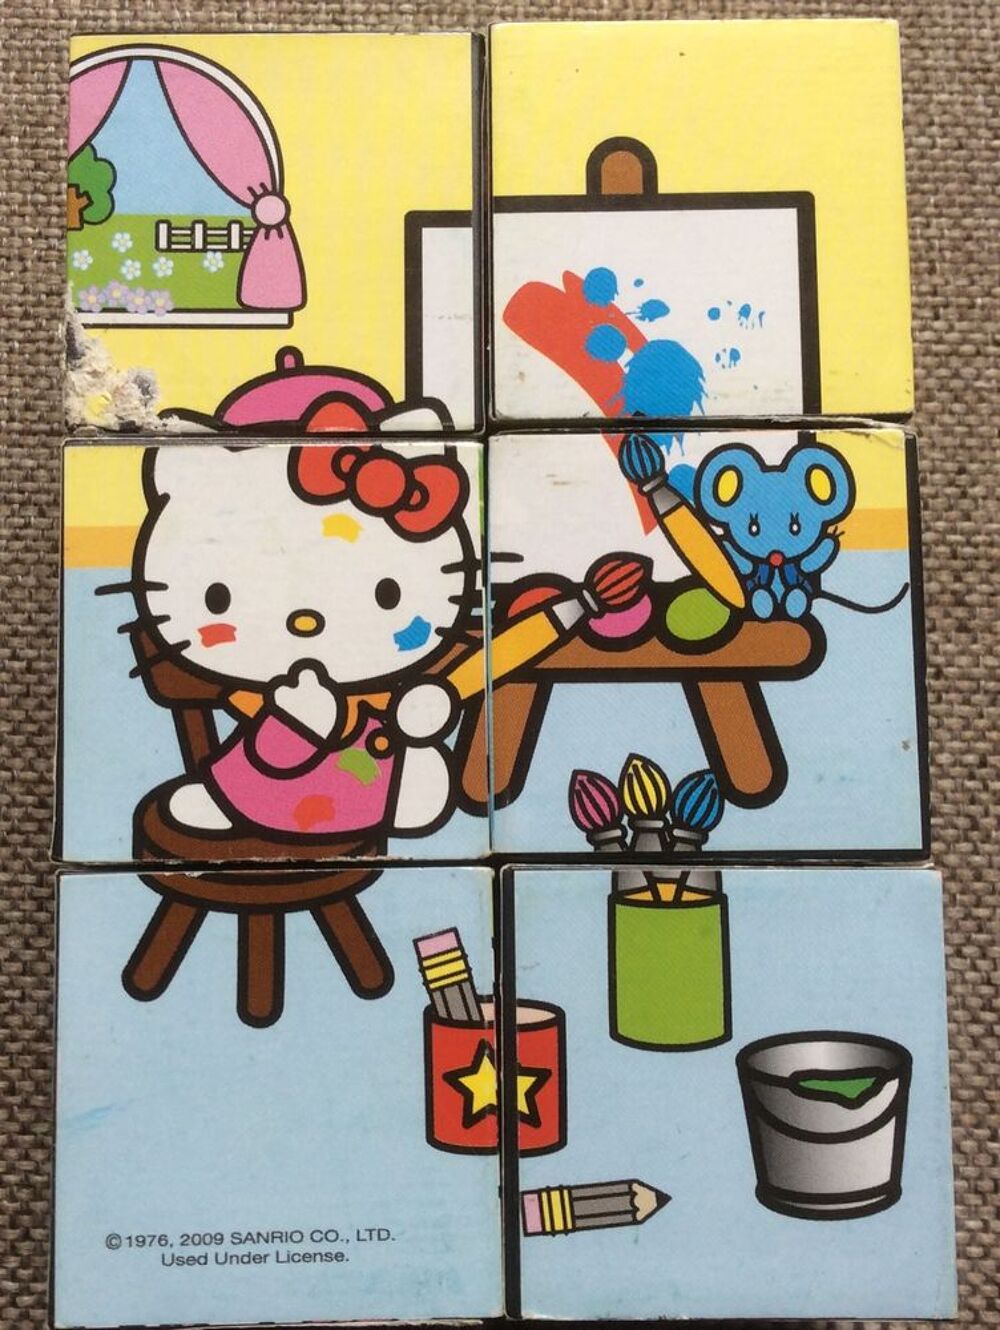 Jeux Hello Kitty (Clementoni) Jeux / jouets